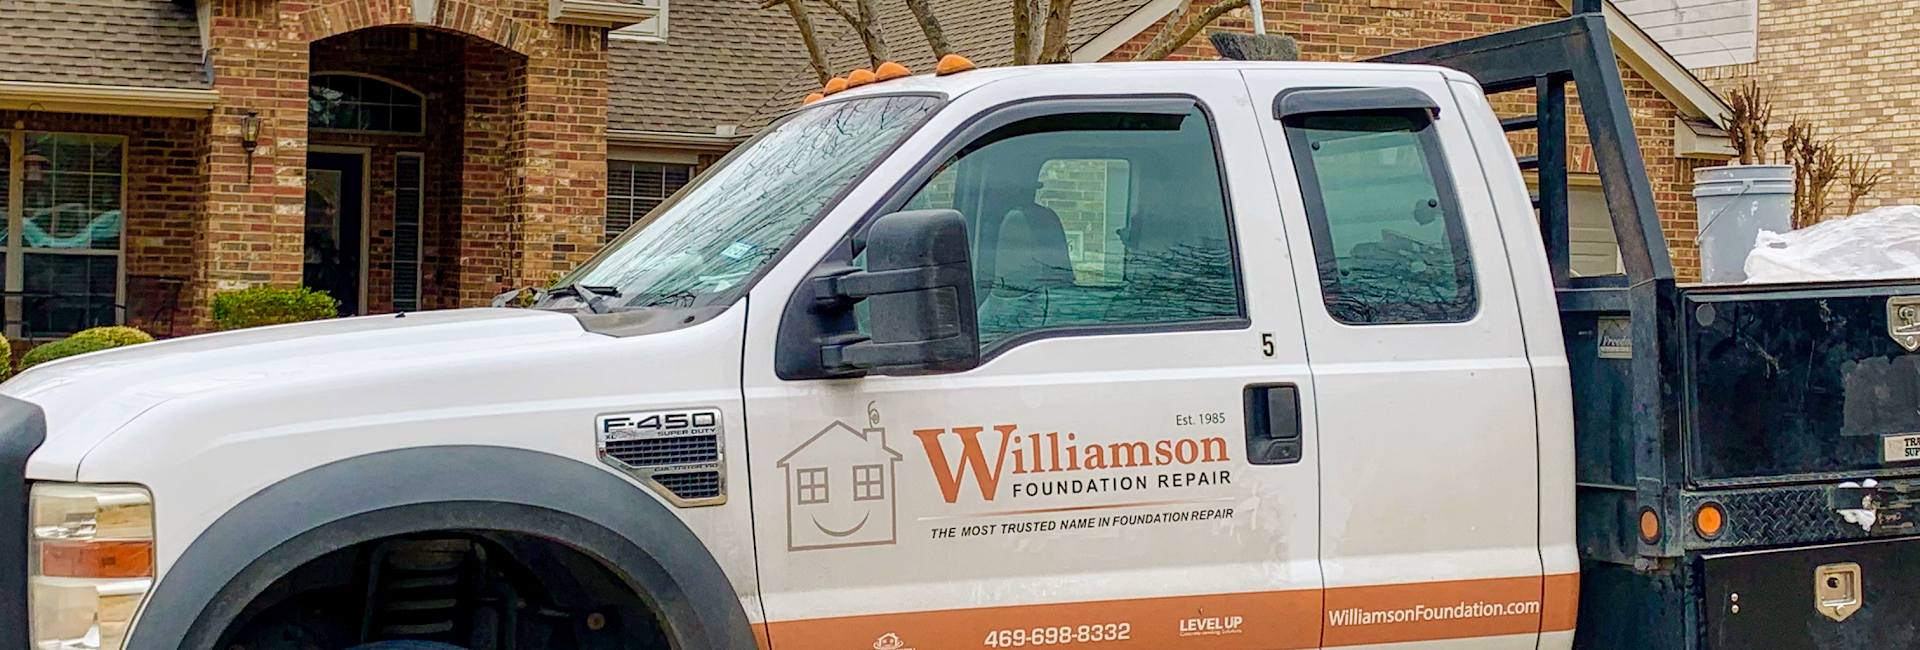 Williamson Foundation Repair 2